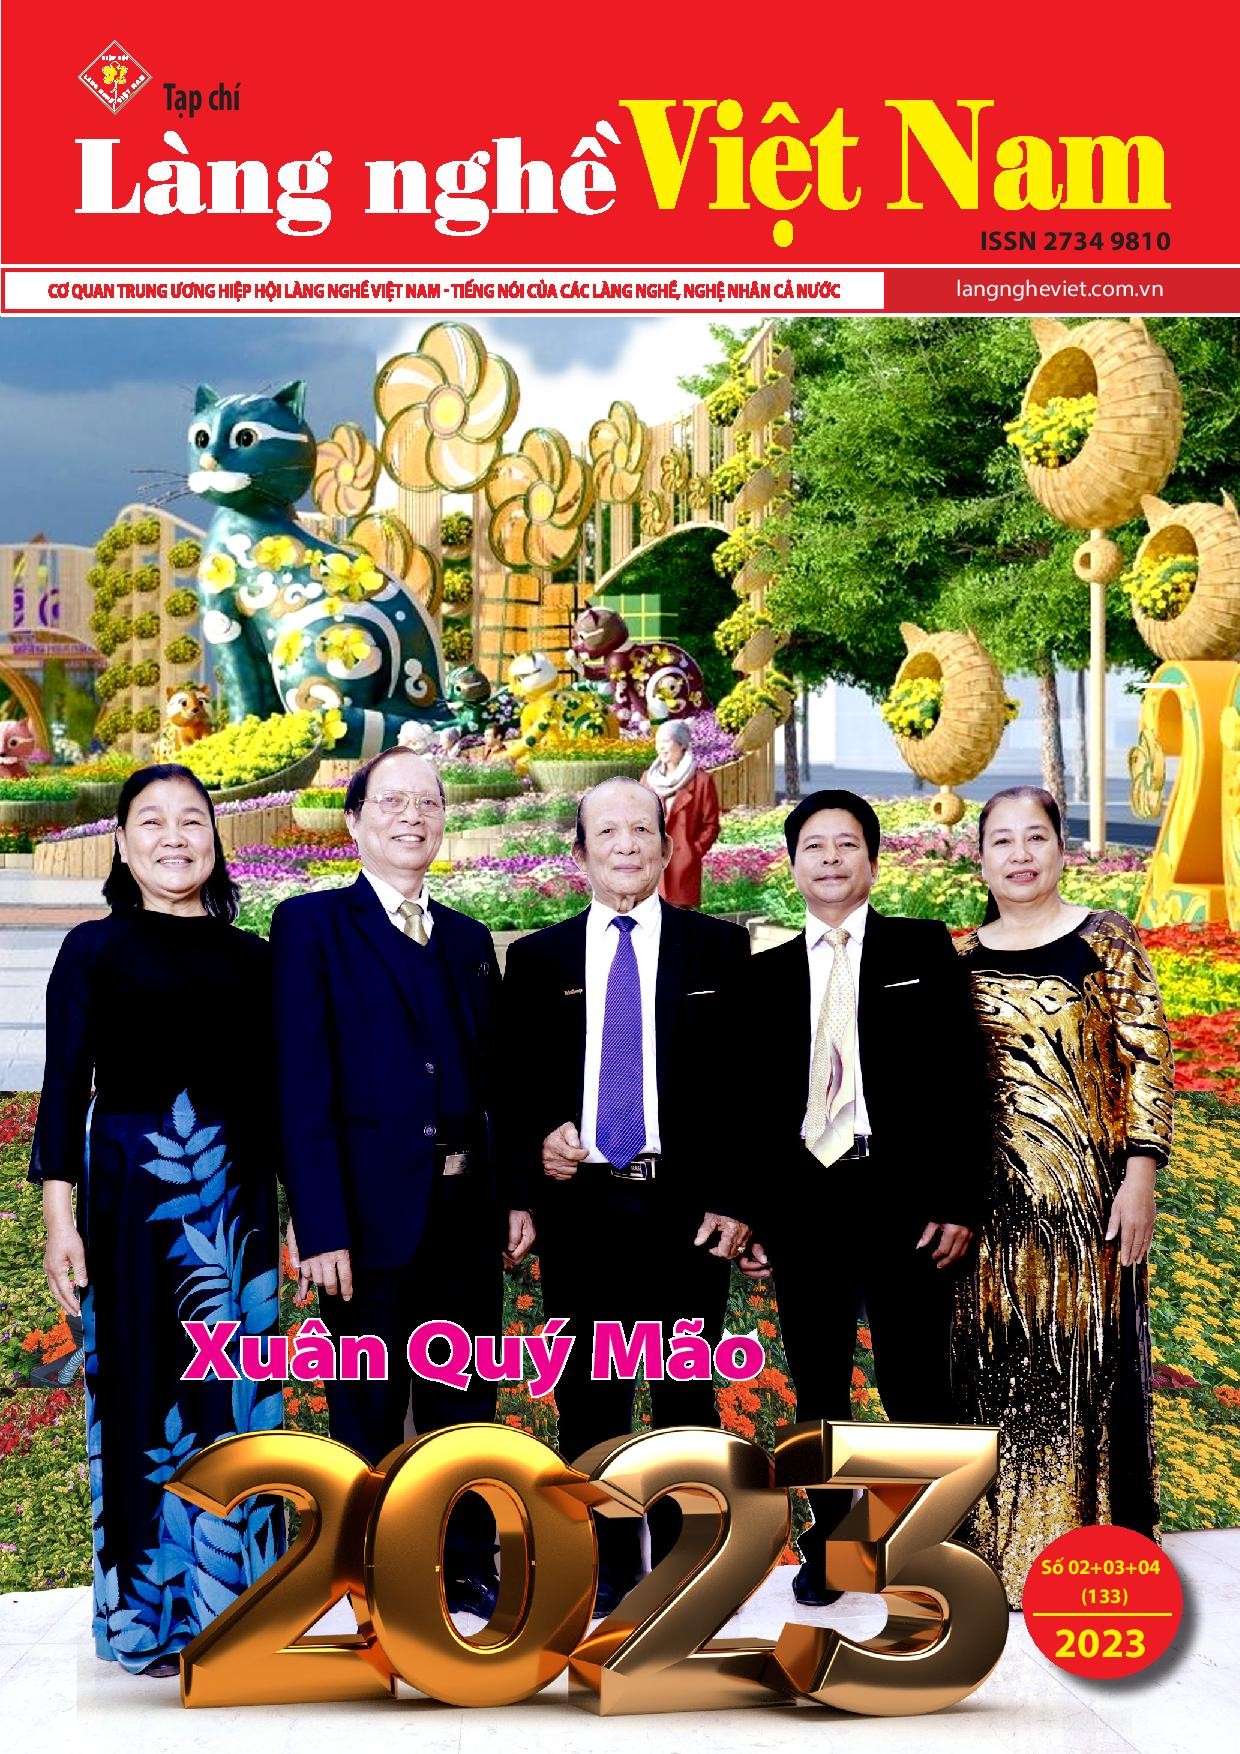 Tạp chí Làng nghề Việt Nam số 02+03+04 (133)/2023 (II)